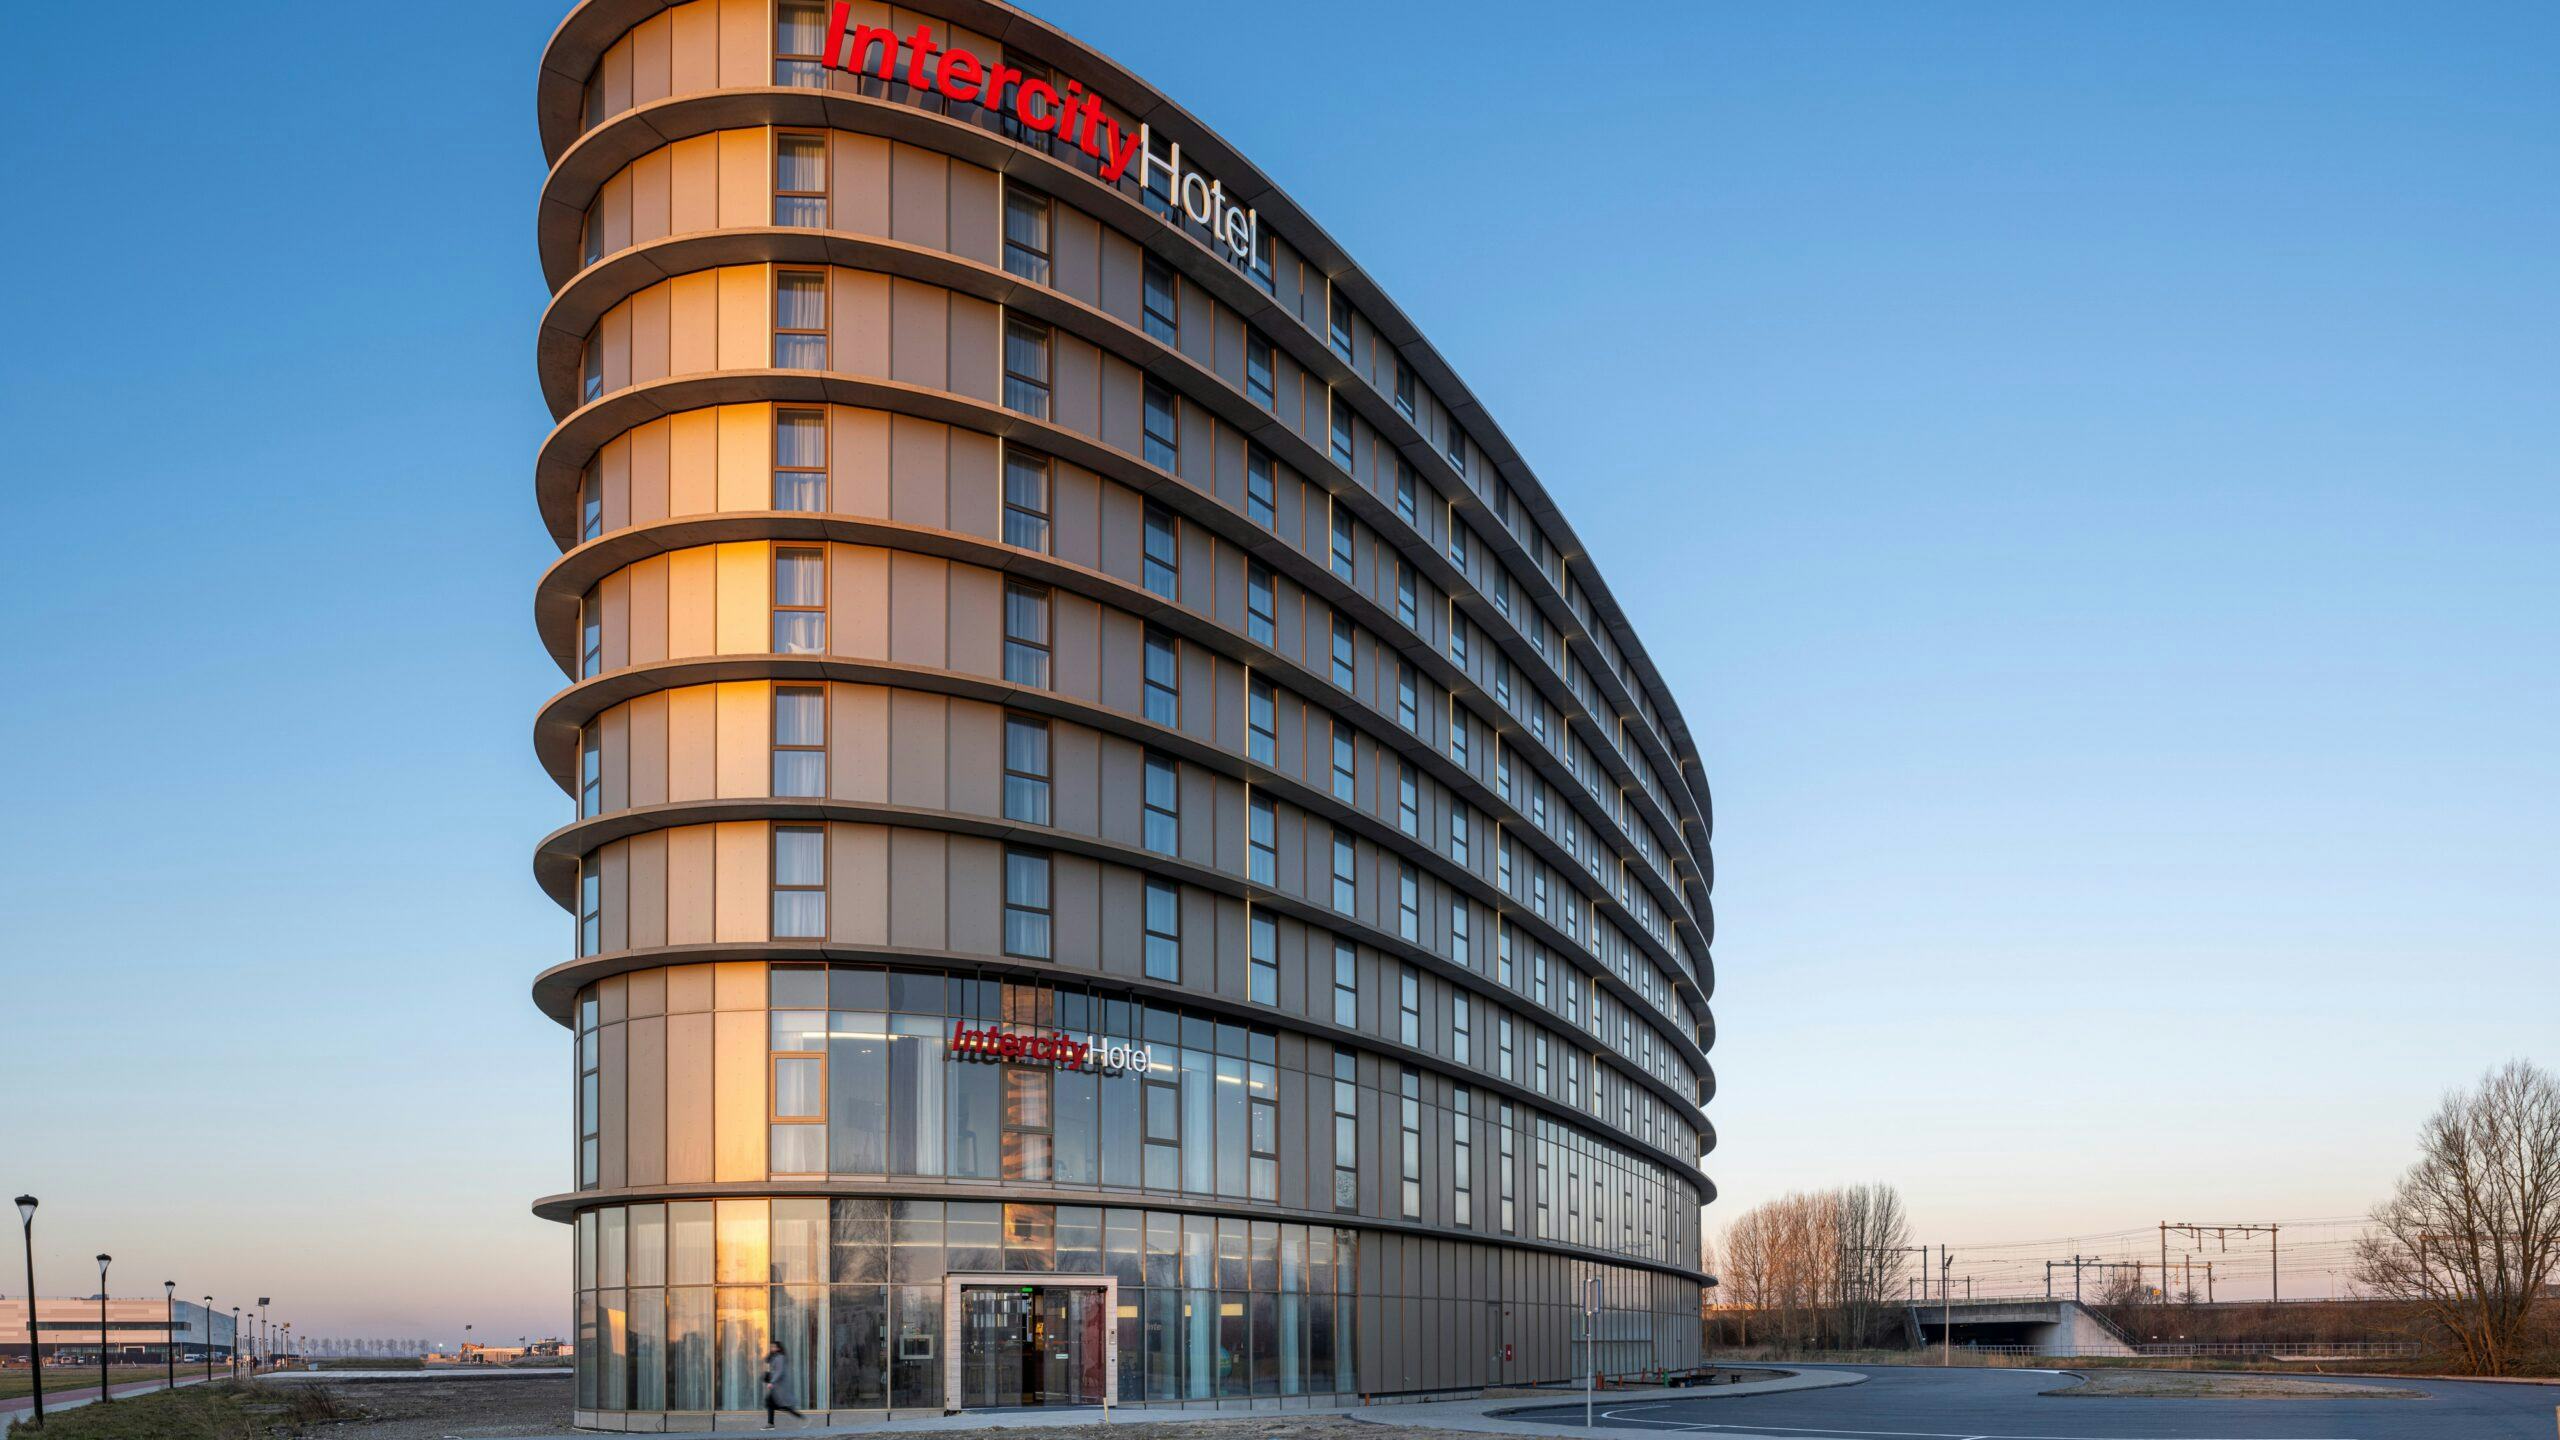 Met IntercityHotel Schiphol heeft Deutsche Hospitality nu drie merken in regio Amsterdam